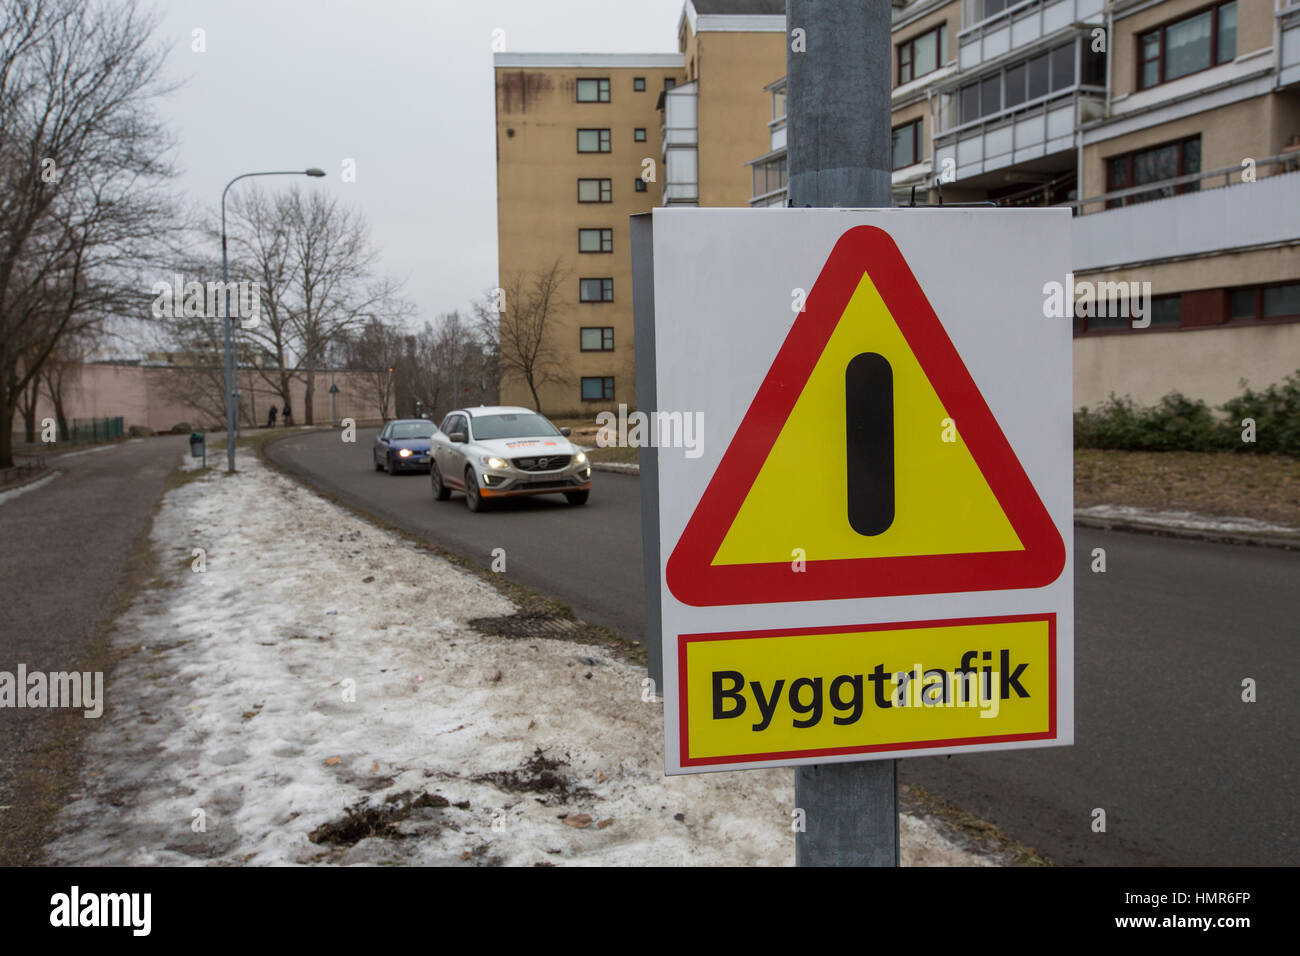 Preste atención, construcción de tráfico en la zona, Kista, Estocolmo, Suecia. Foto de stock